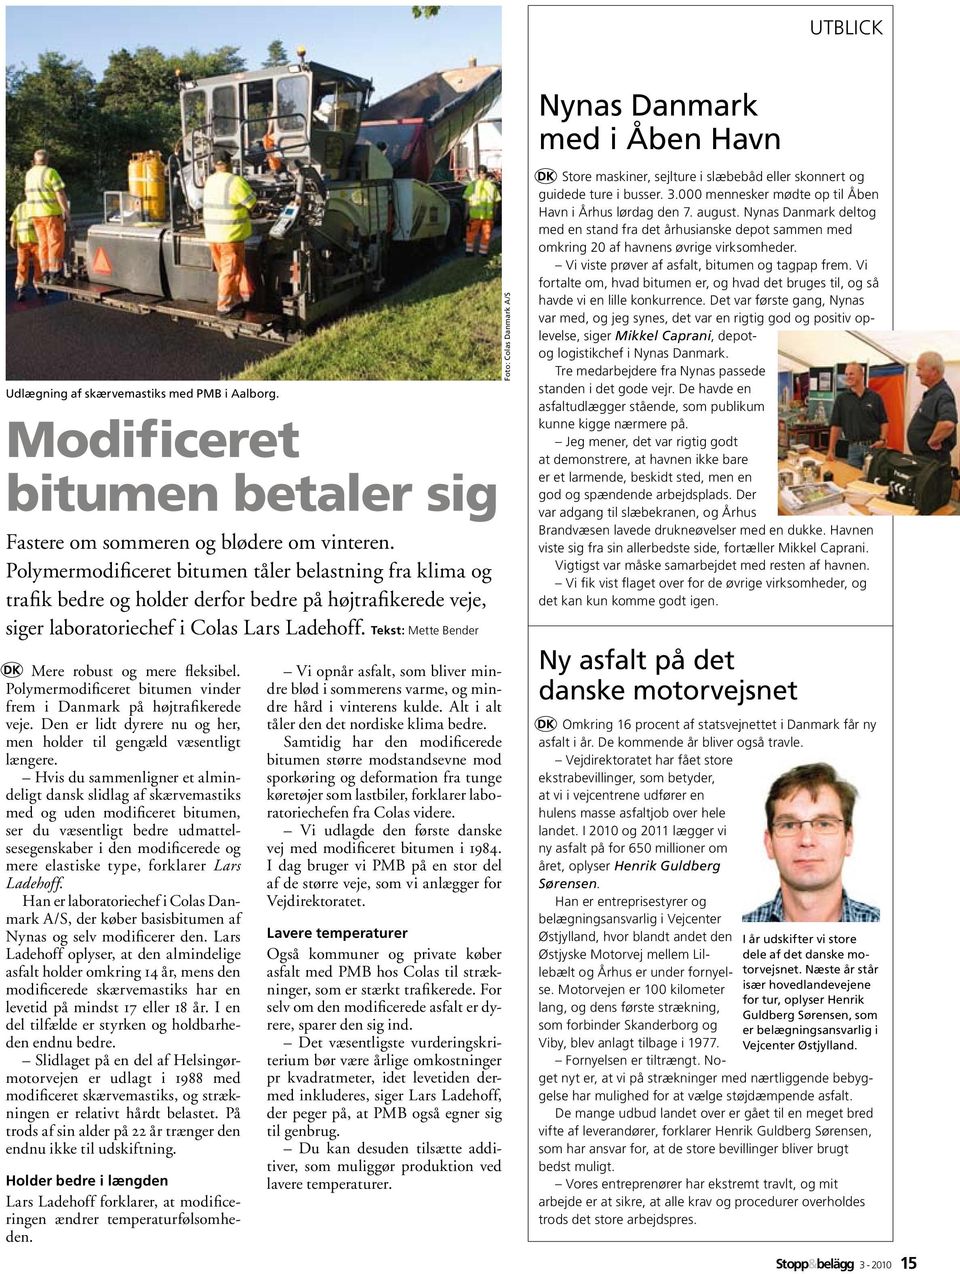 Tekst: Mette Bender Mere robust og mere fleksibel. Polymermodificeret bitumen vinder frem i Danmark på højtrafikerede veje. Den er lidt dyrere nu og her, men holder til gengæld væsentligt længere.